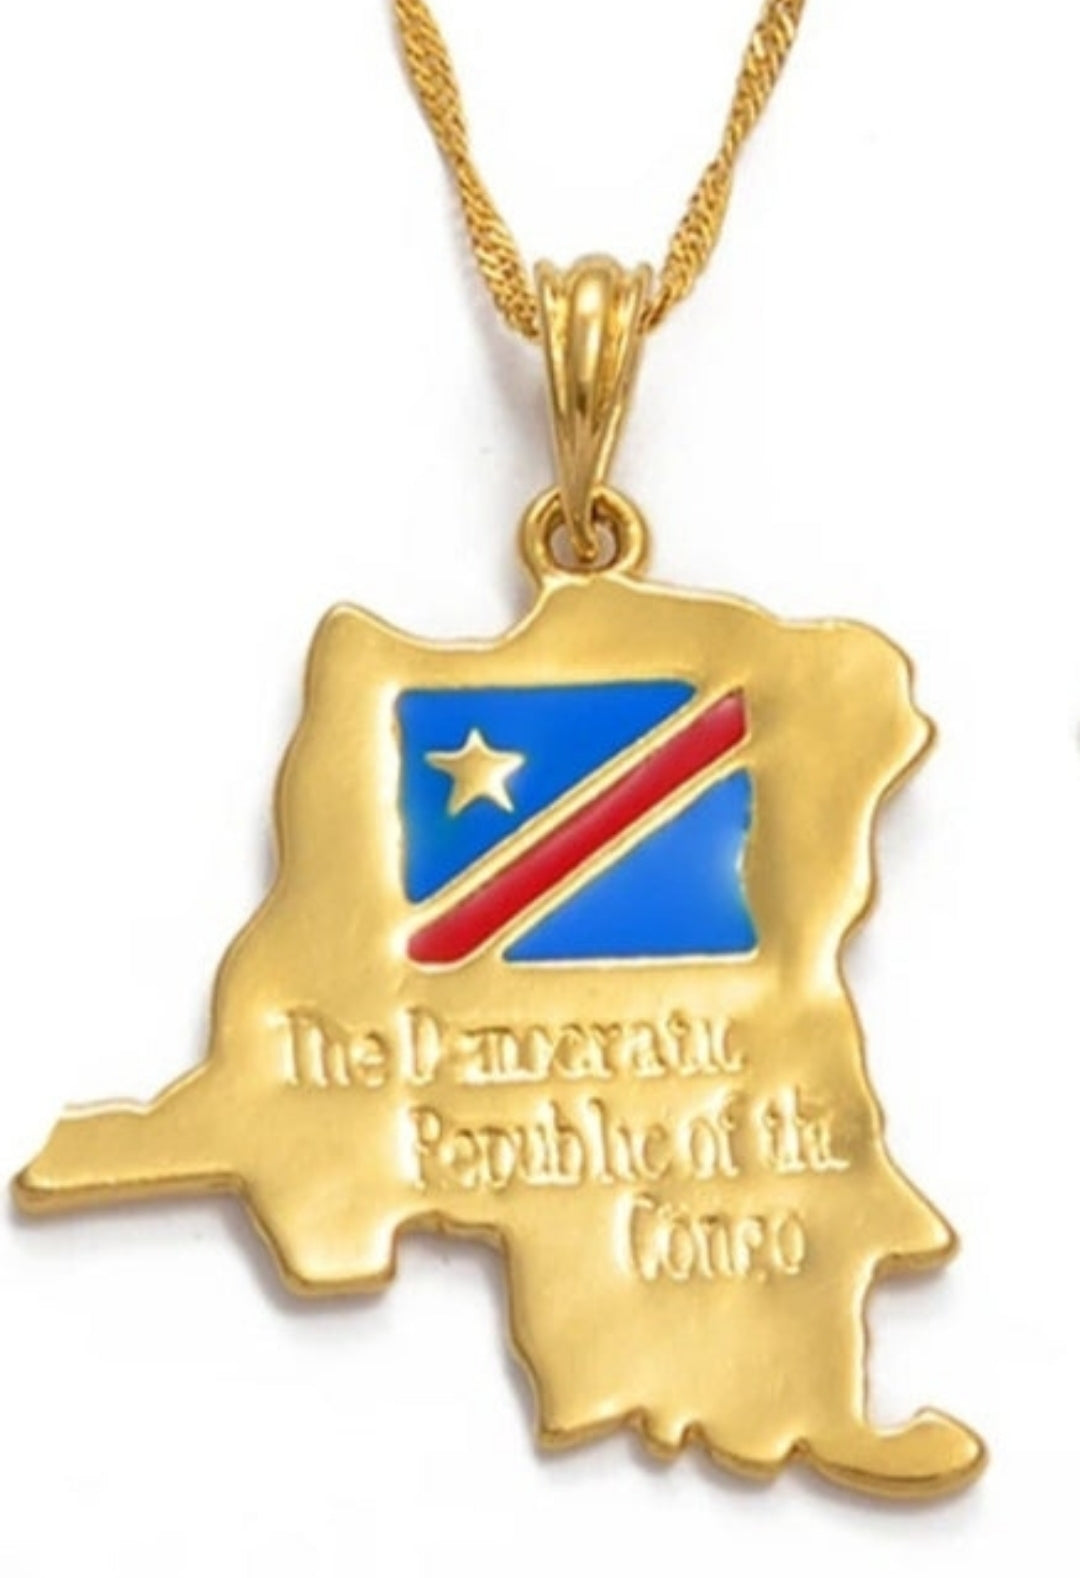 Democratic Republic of the Congo Necklace